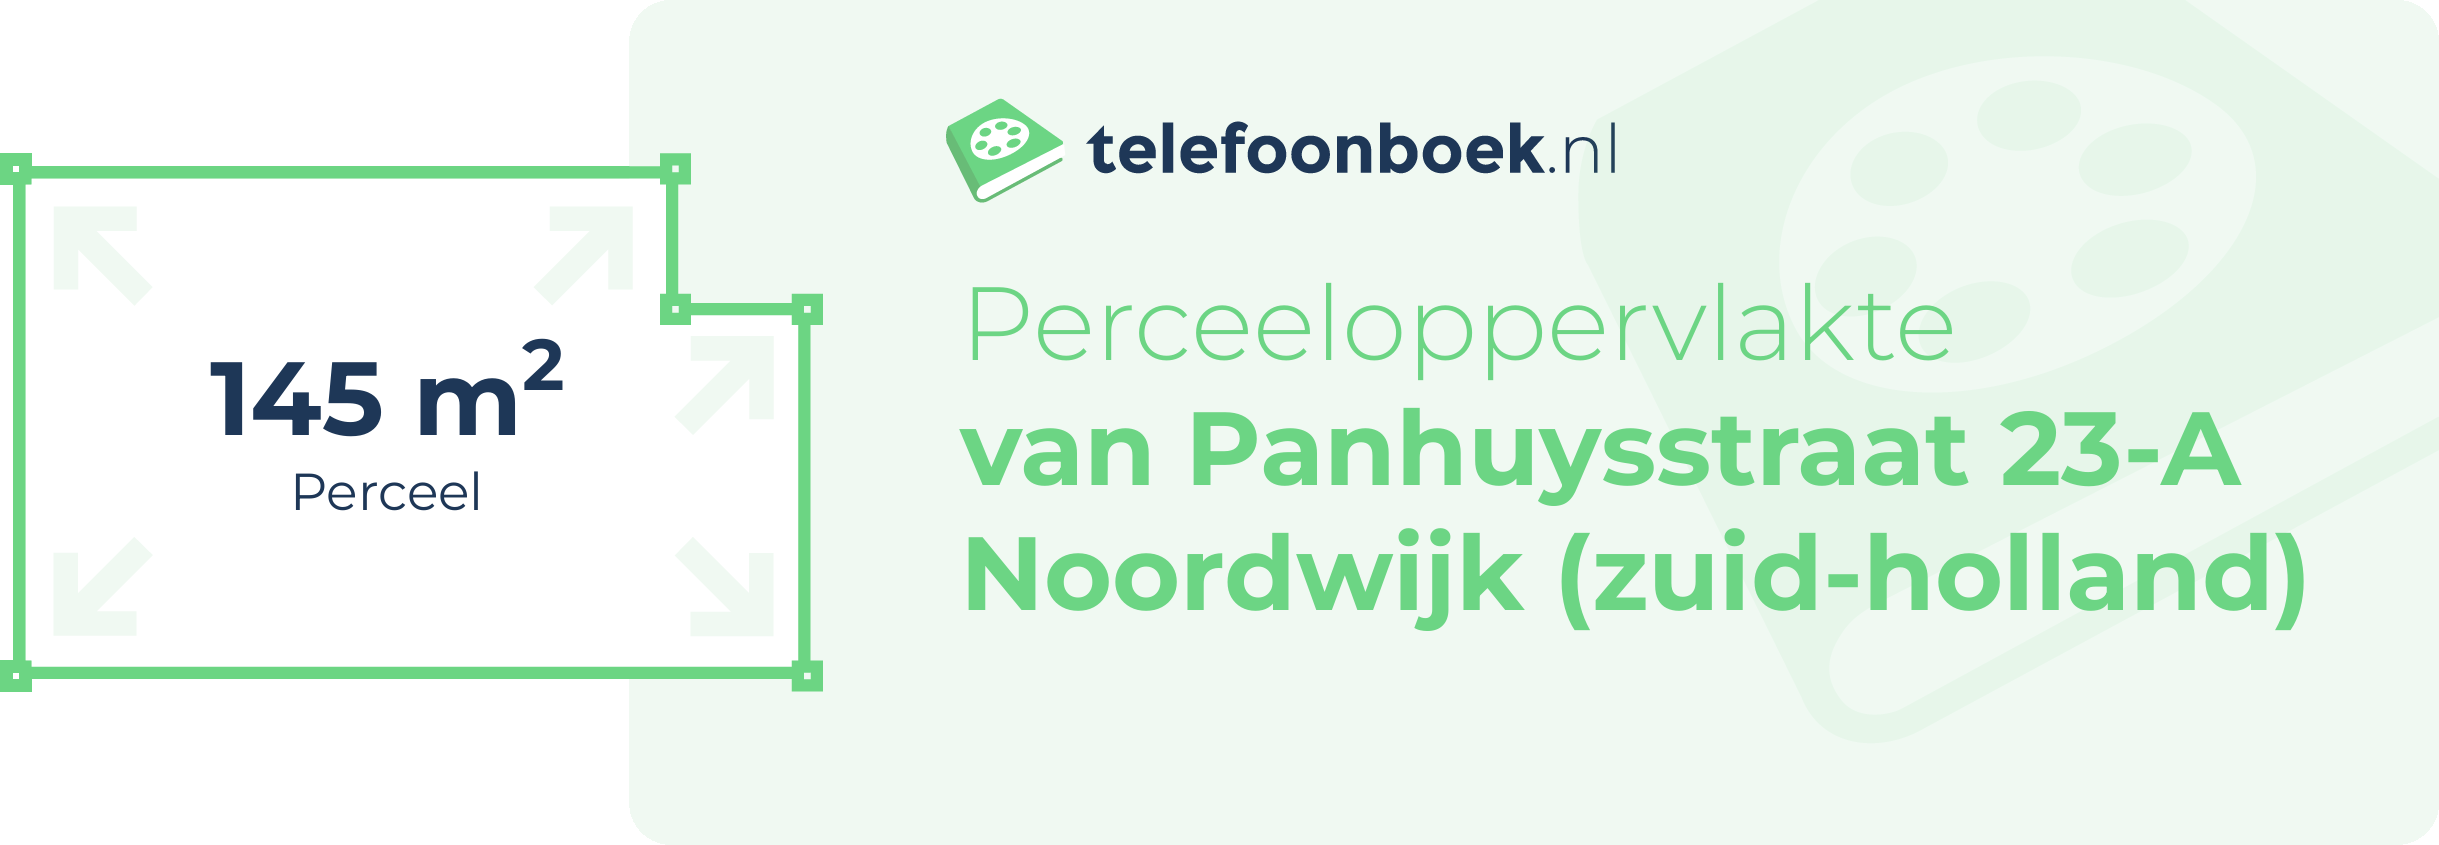 Perceeloppervlakte Van Panhuysstraat 23-A Noordwijk (Zuid-Holland)